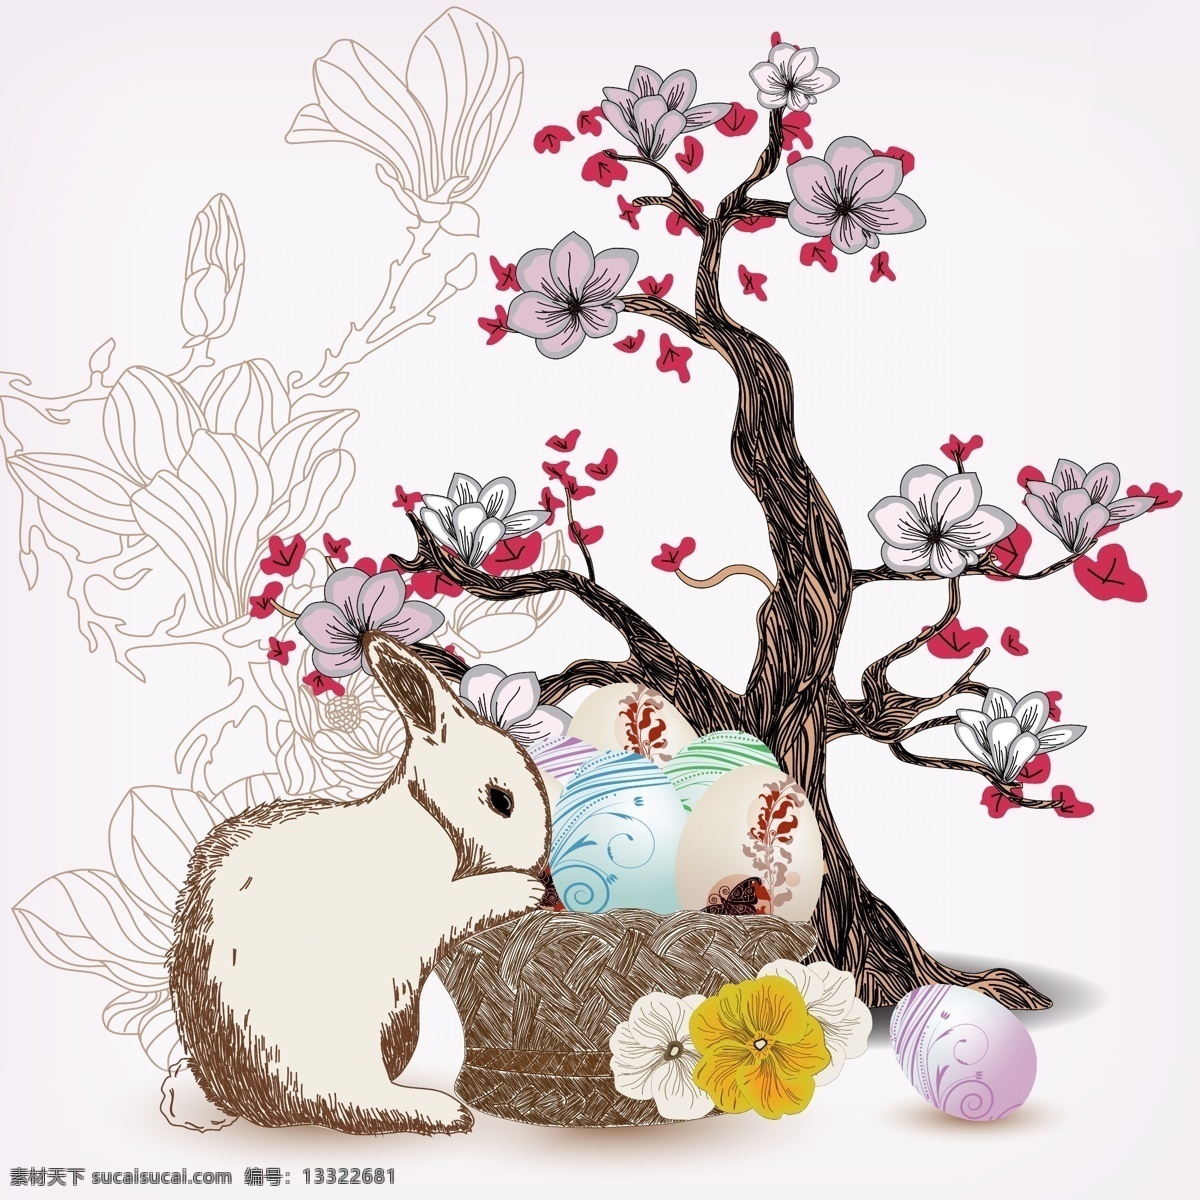 复活节 复活节彩蛋 兔子 手绘 花卉 鸡蛋 矢量 节日素材 节日庆祝 文化艺术